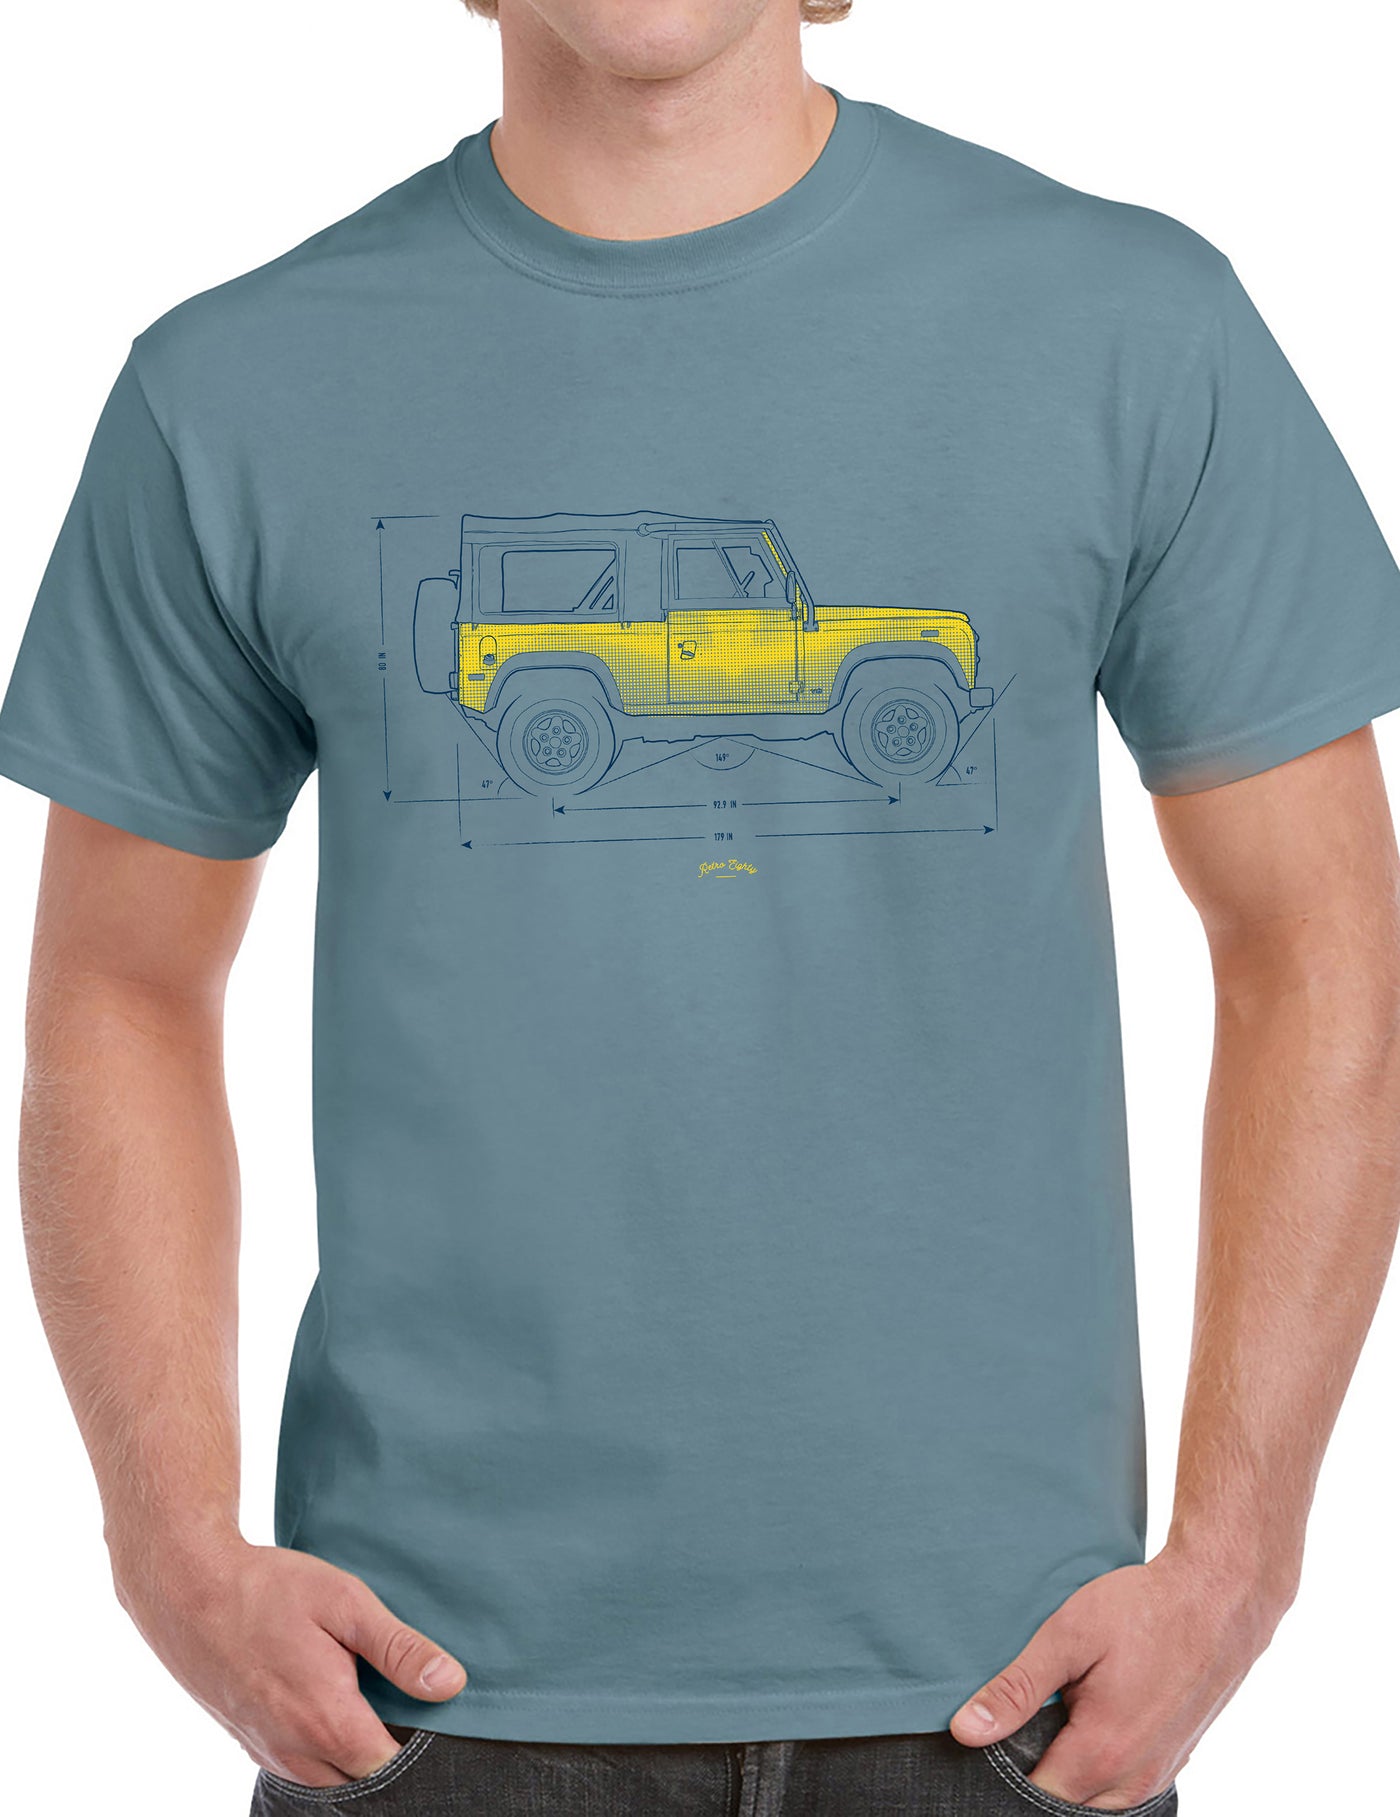 NAS90 Blueprint land rover t-shirt